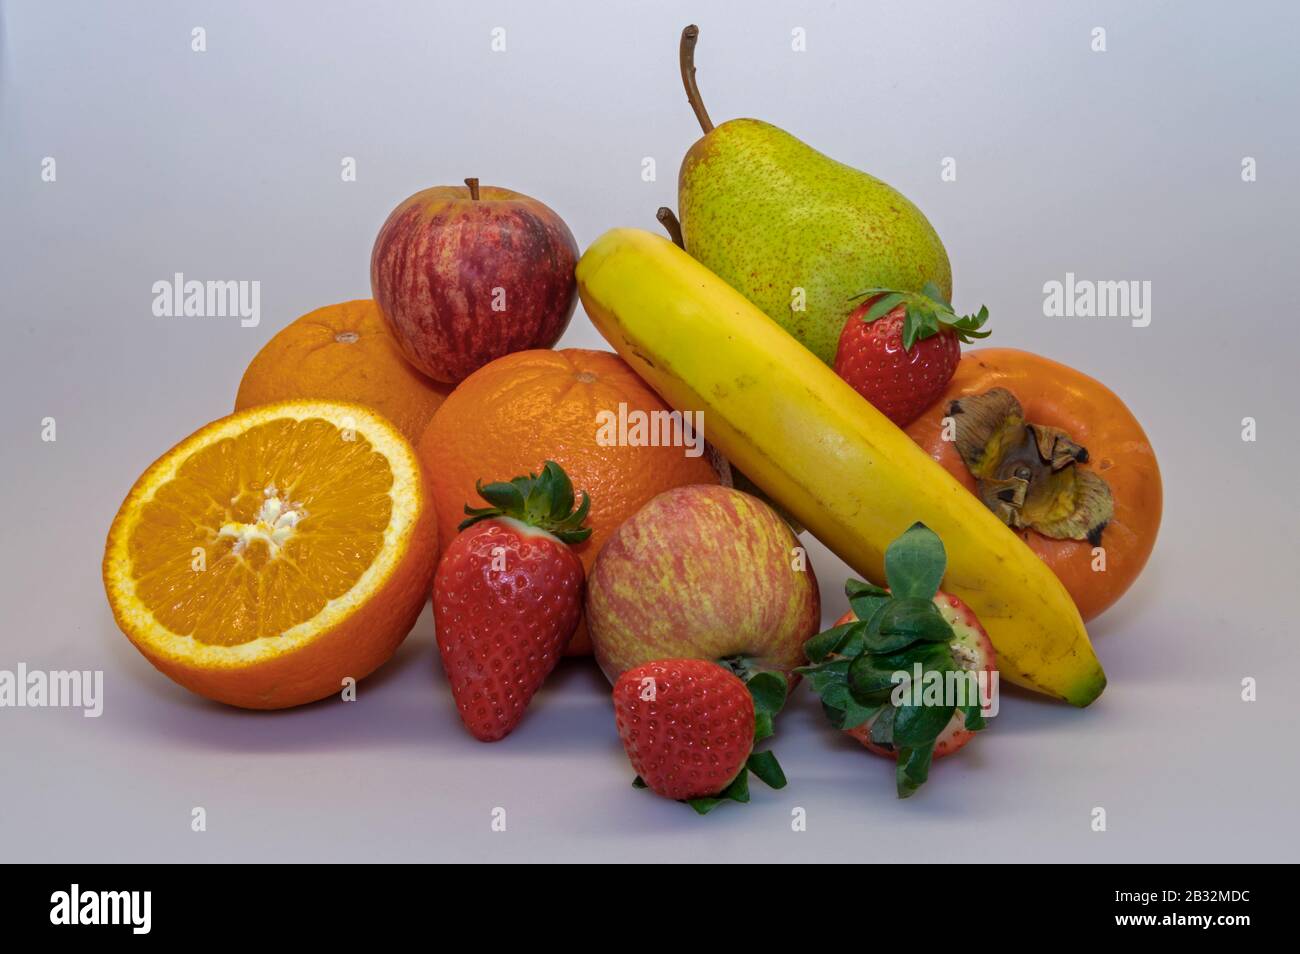 Erdbeere, Apfel, Banana, Rock Pear, Orange, Persimmon. Abwechslungsreiche Früchte sind essentiell für eine gesunde und ausgewogene Ernährung. Stockfoto